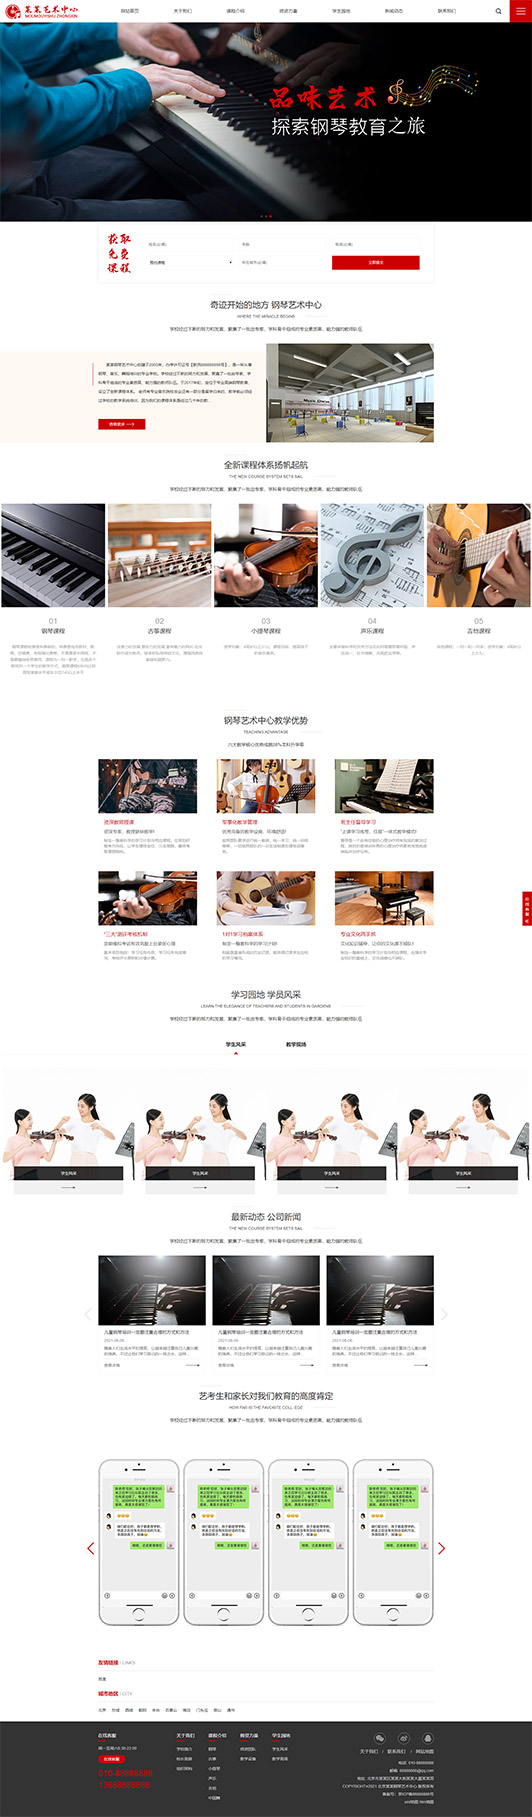 迪庆钢琴艺术培训公司响应式企业网站